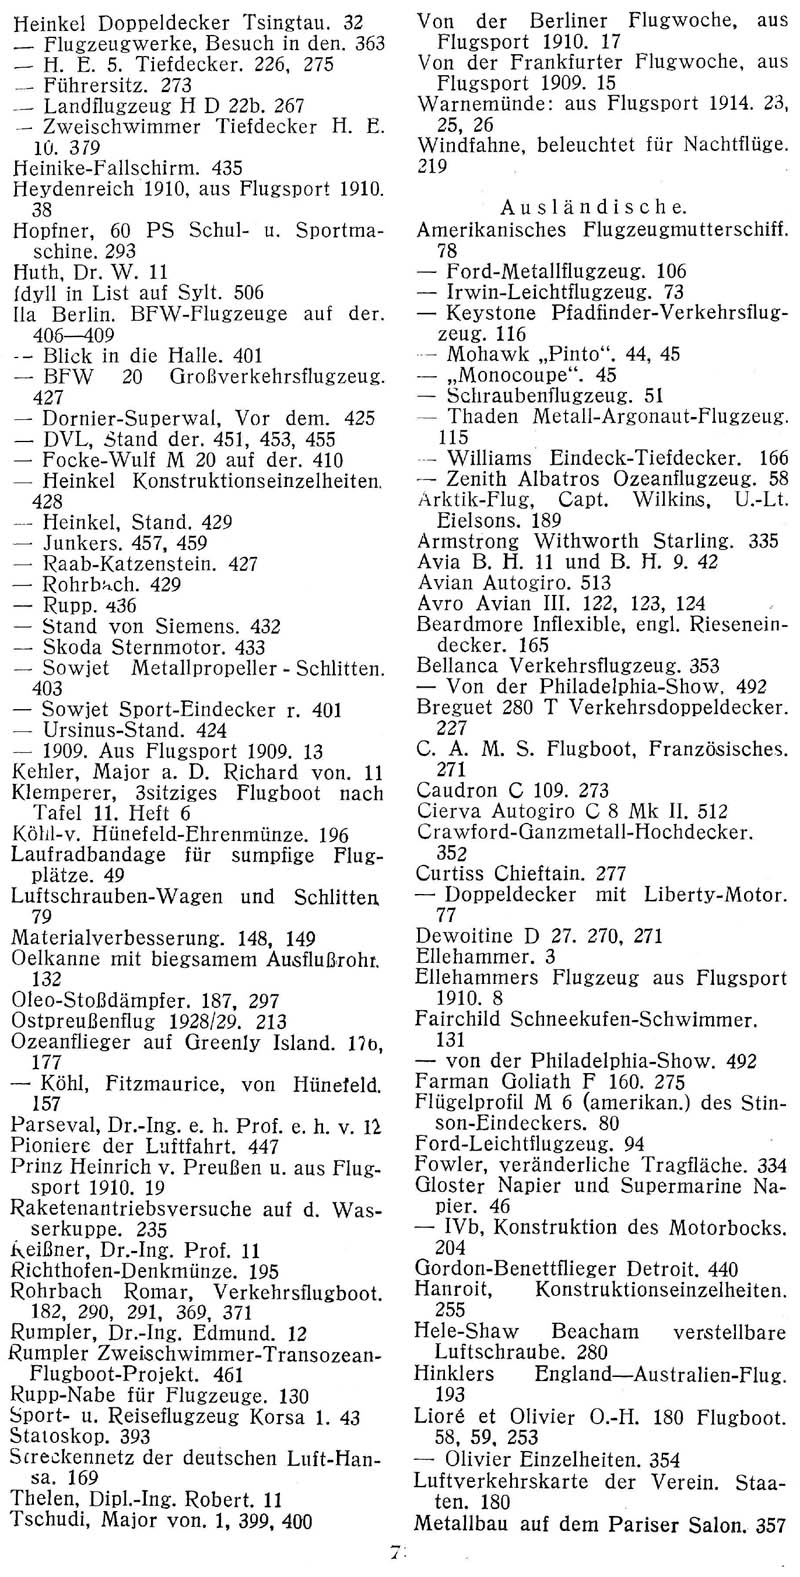 Sachregister und Inhaltsverzeichnis der Zeitschrift Flugsport für das Jahr 1928